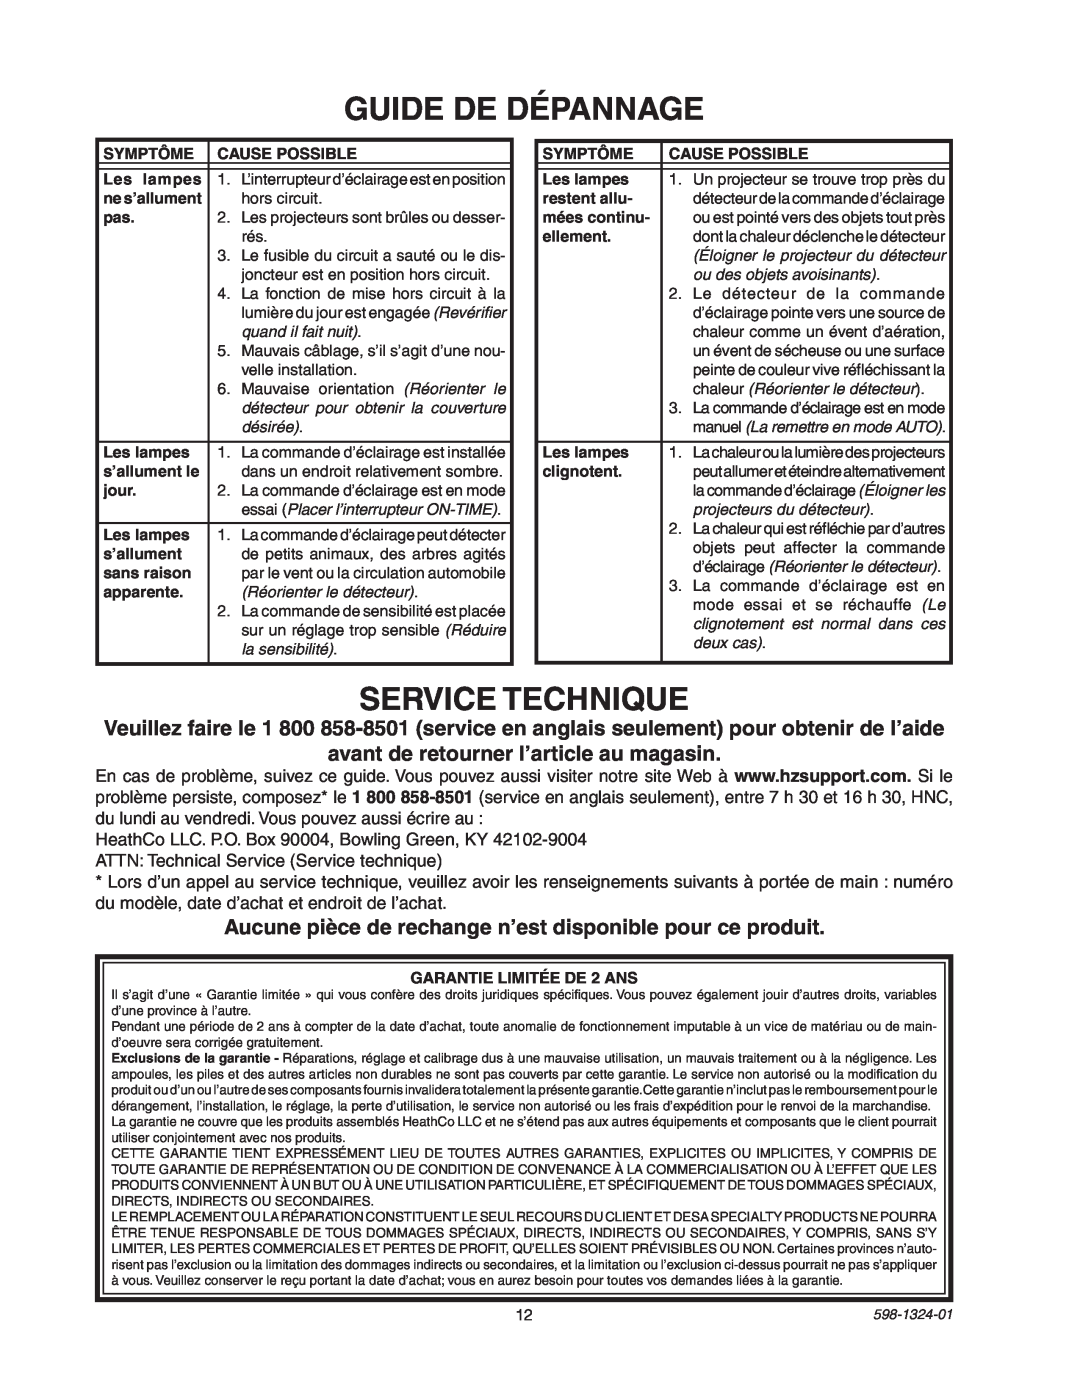 Heath Zenith BL-5511 manual Guide De Dépannage, Service Technique 